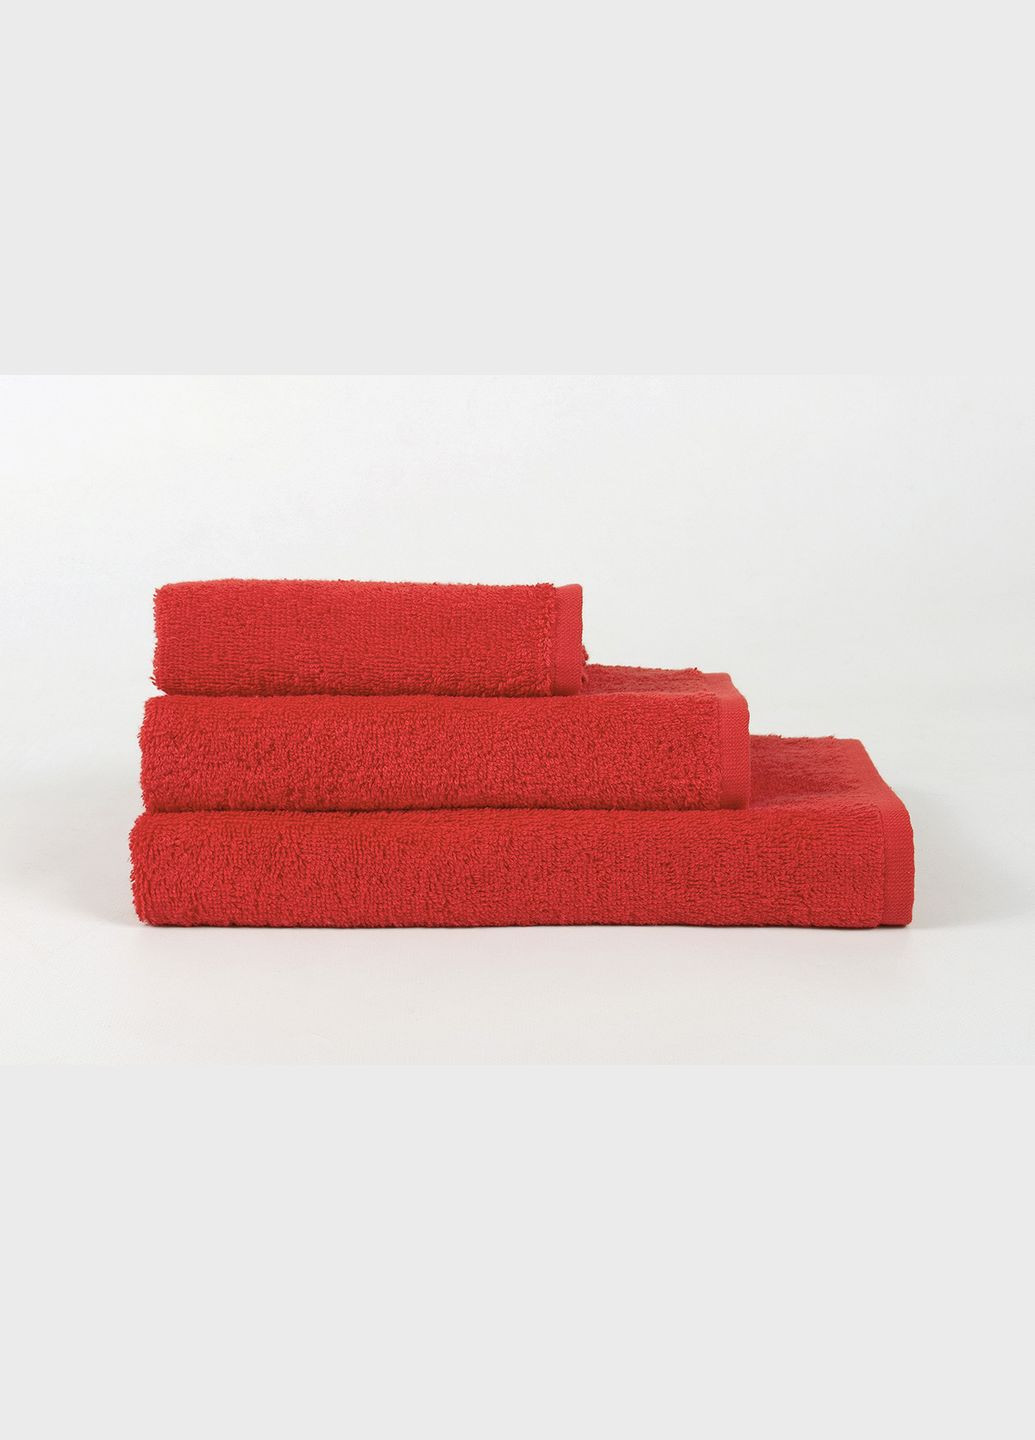 Lotus полотенце отель - 50*90 красный производство -